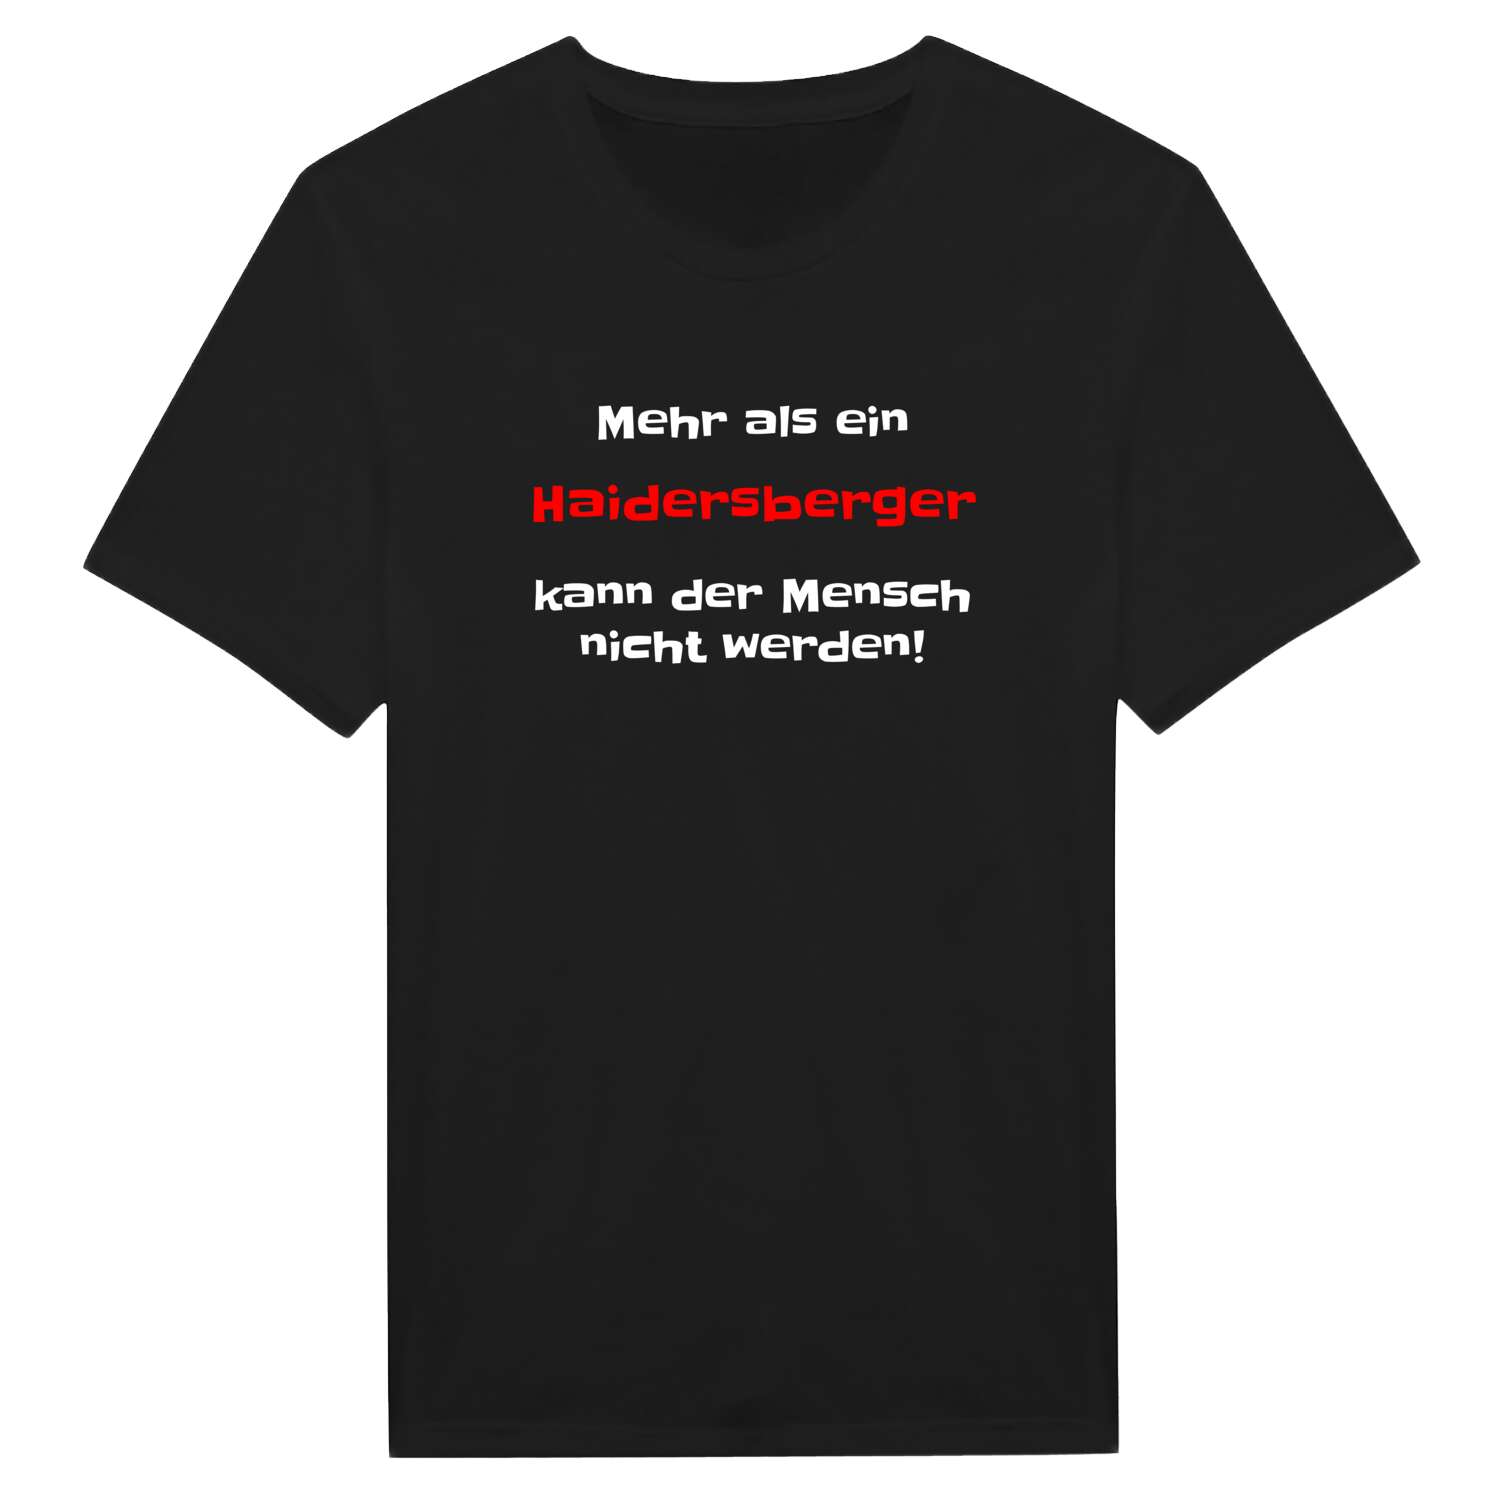 Haidersberg T-Shirt »Mehr als ein«